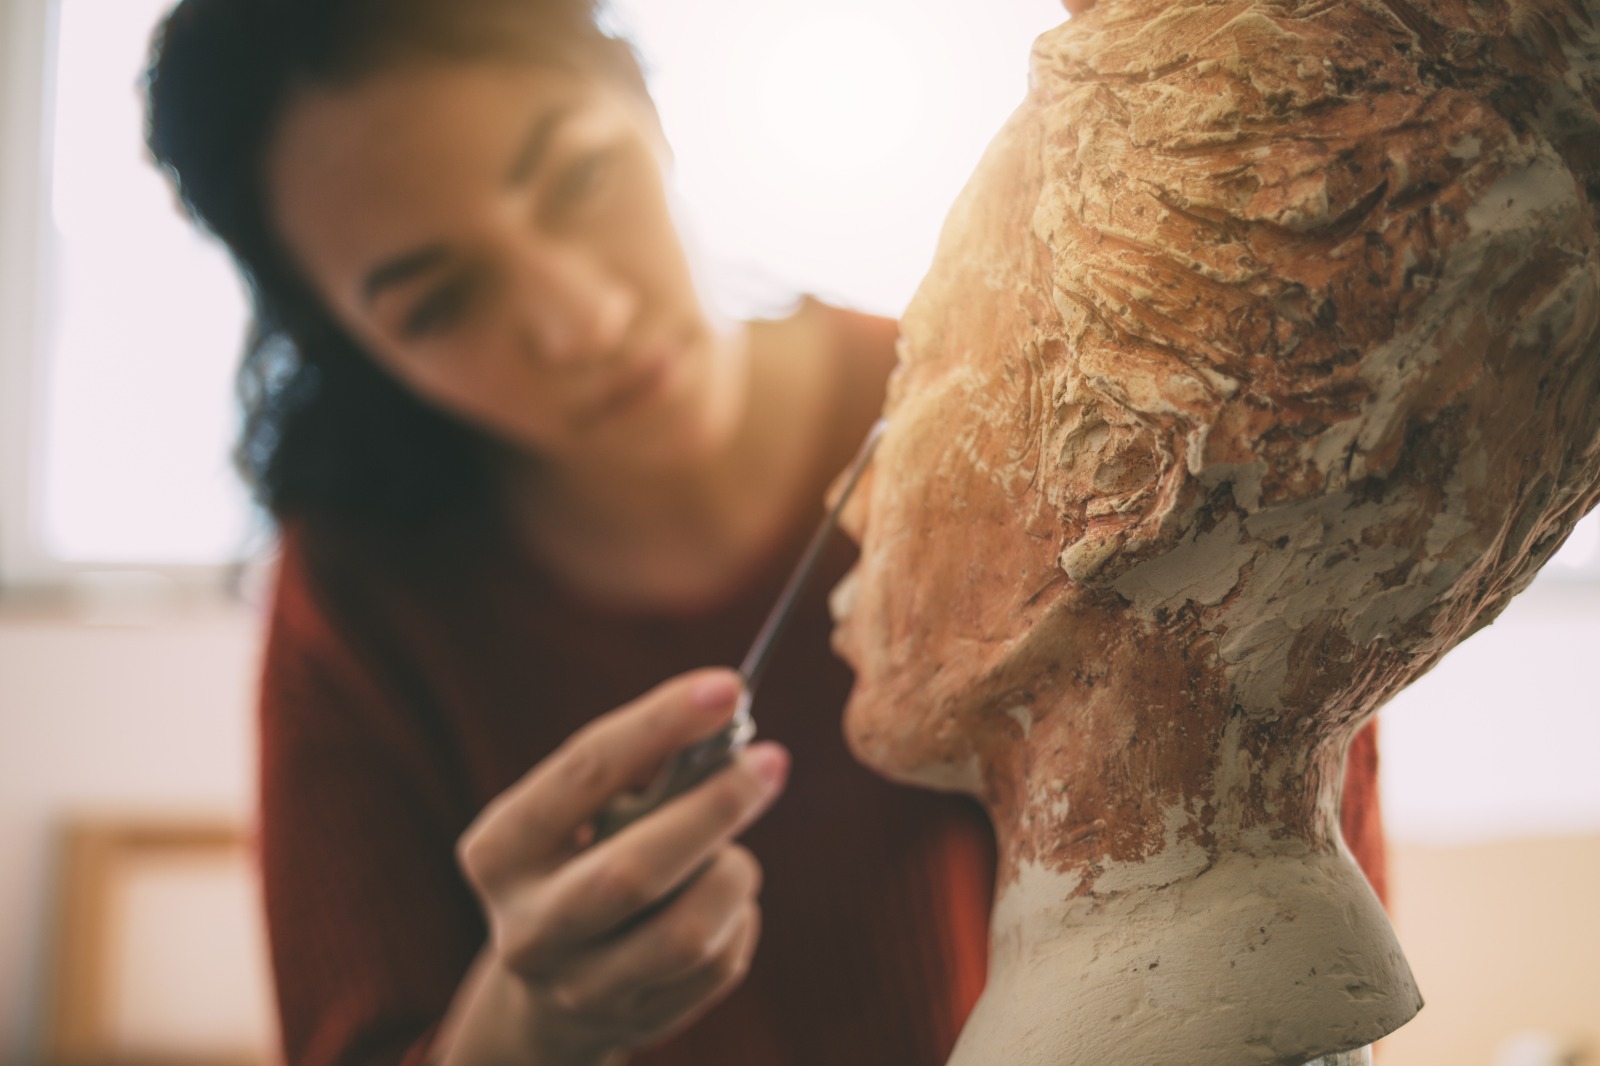 Las diferentes técnicas de la escultura se pueden implementar en una obra. Todo dependerá del artista. (Foto Prensa Libre: Shutterstock).